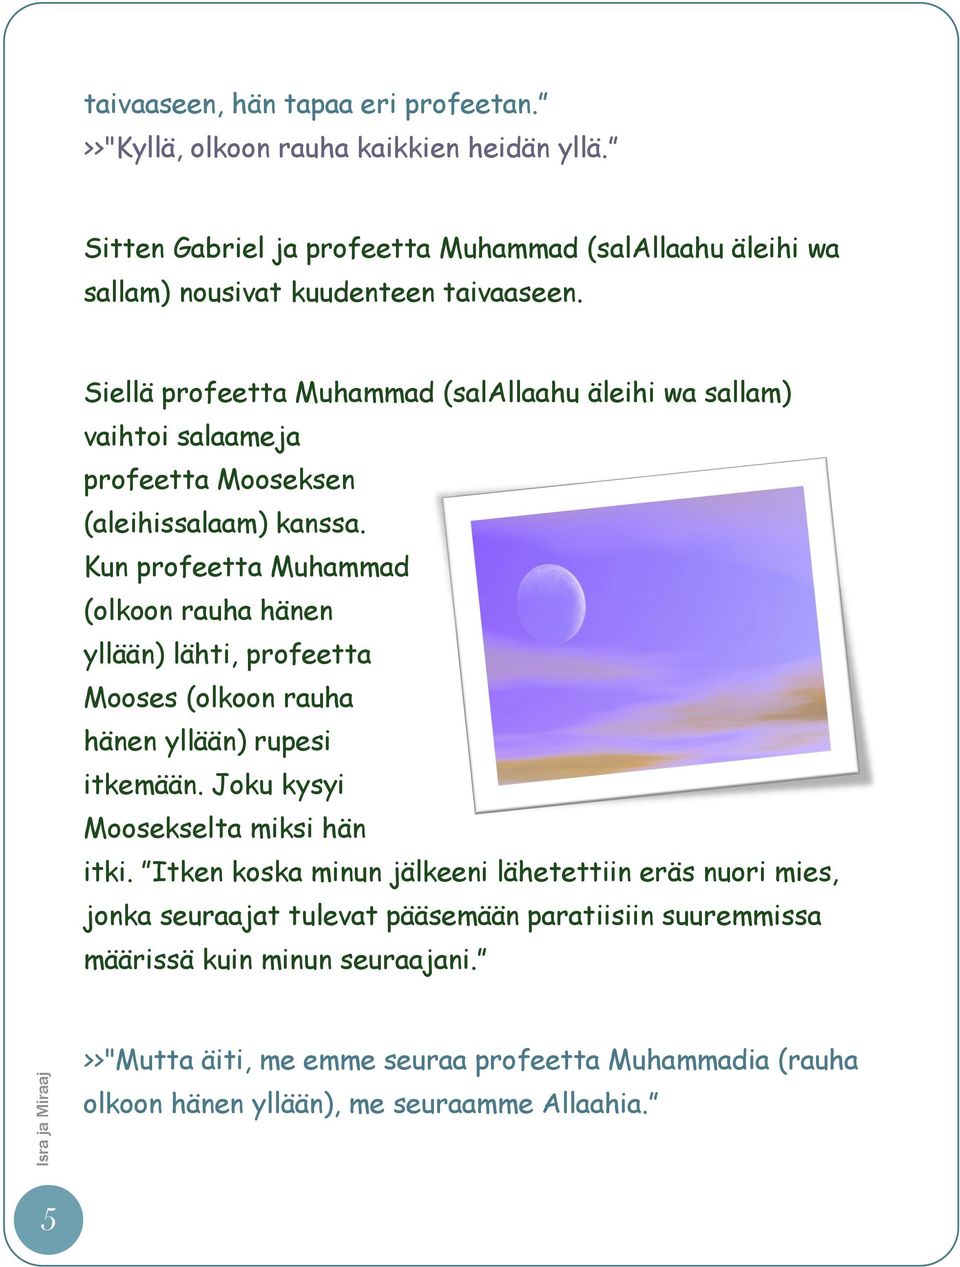 Siellä profeetta Muhammad (salallaahu äleihi wa sallam) vaihtoi salaameja profeetta Mooseksen (aleihissalaam) kanssa.